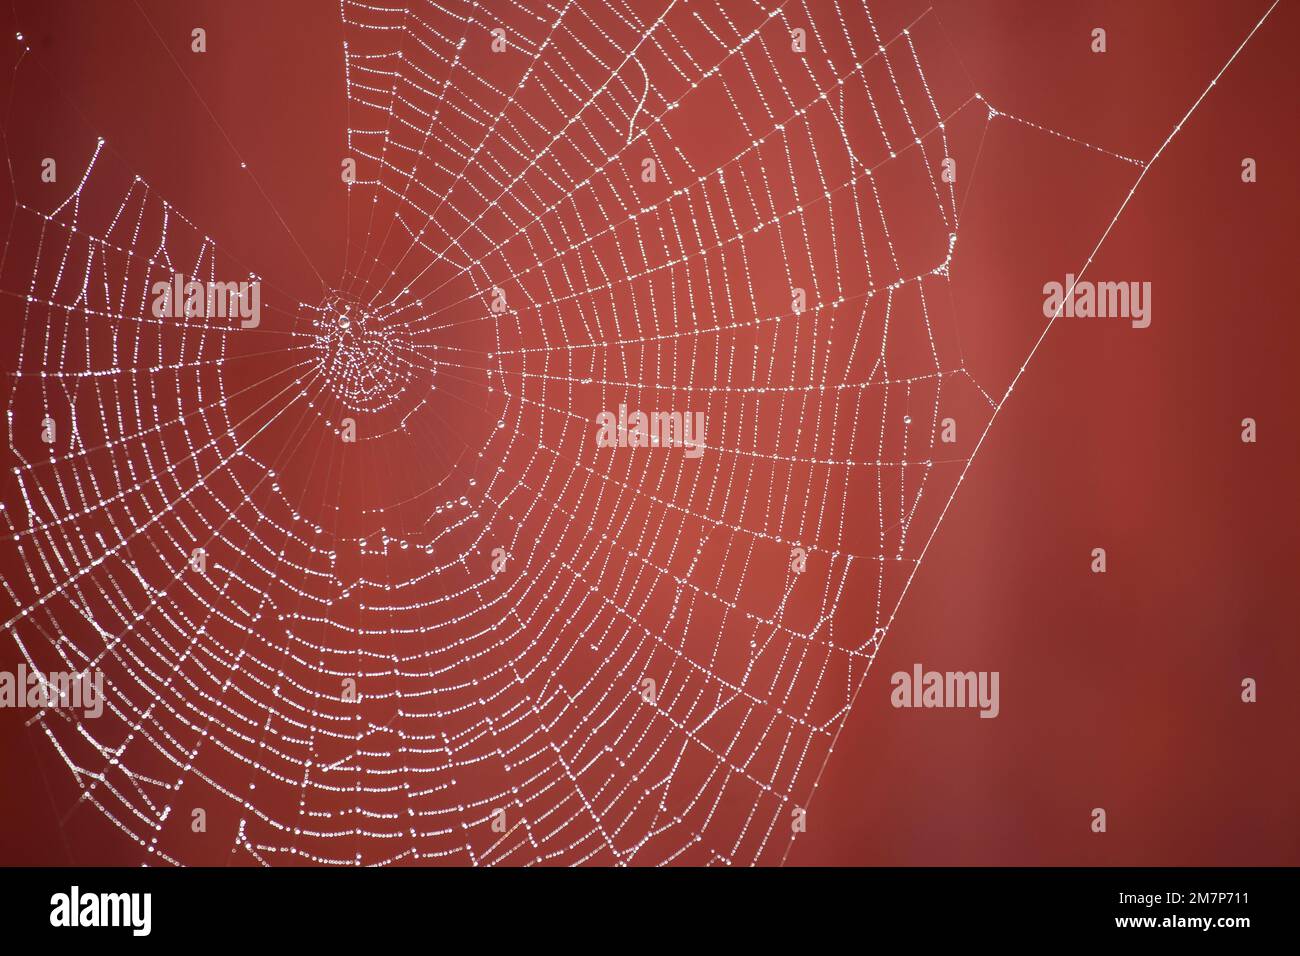 Taubedeckte Spinnennetze mit rotem Hintergrund Stockfoto